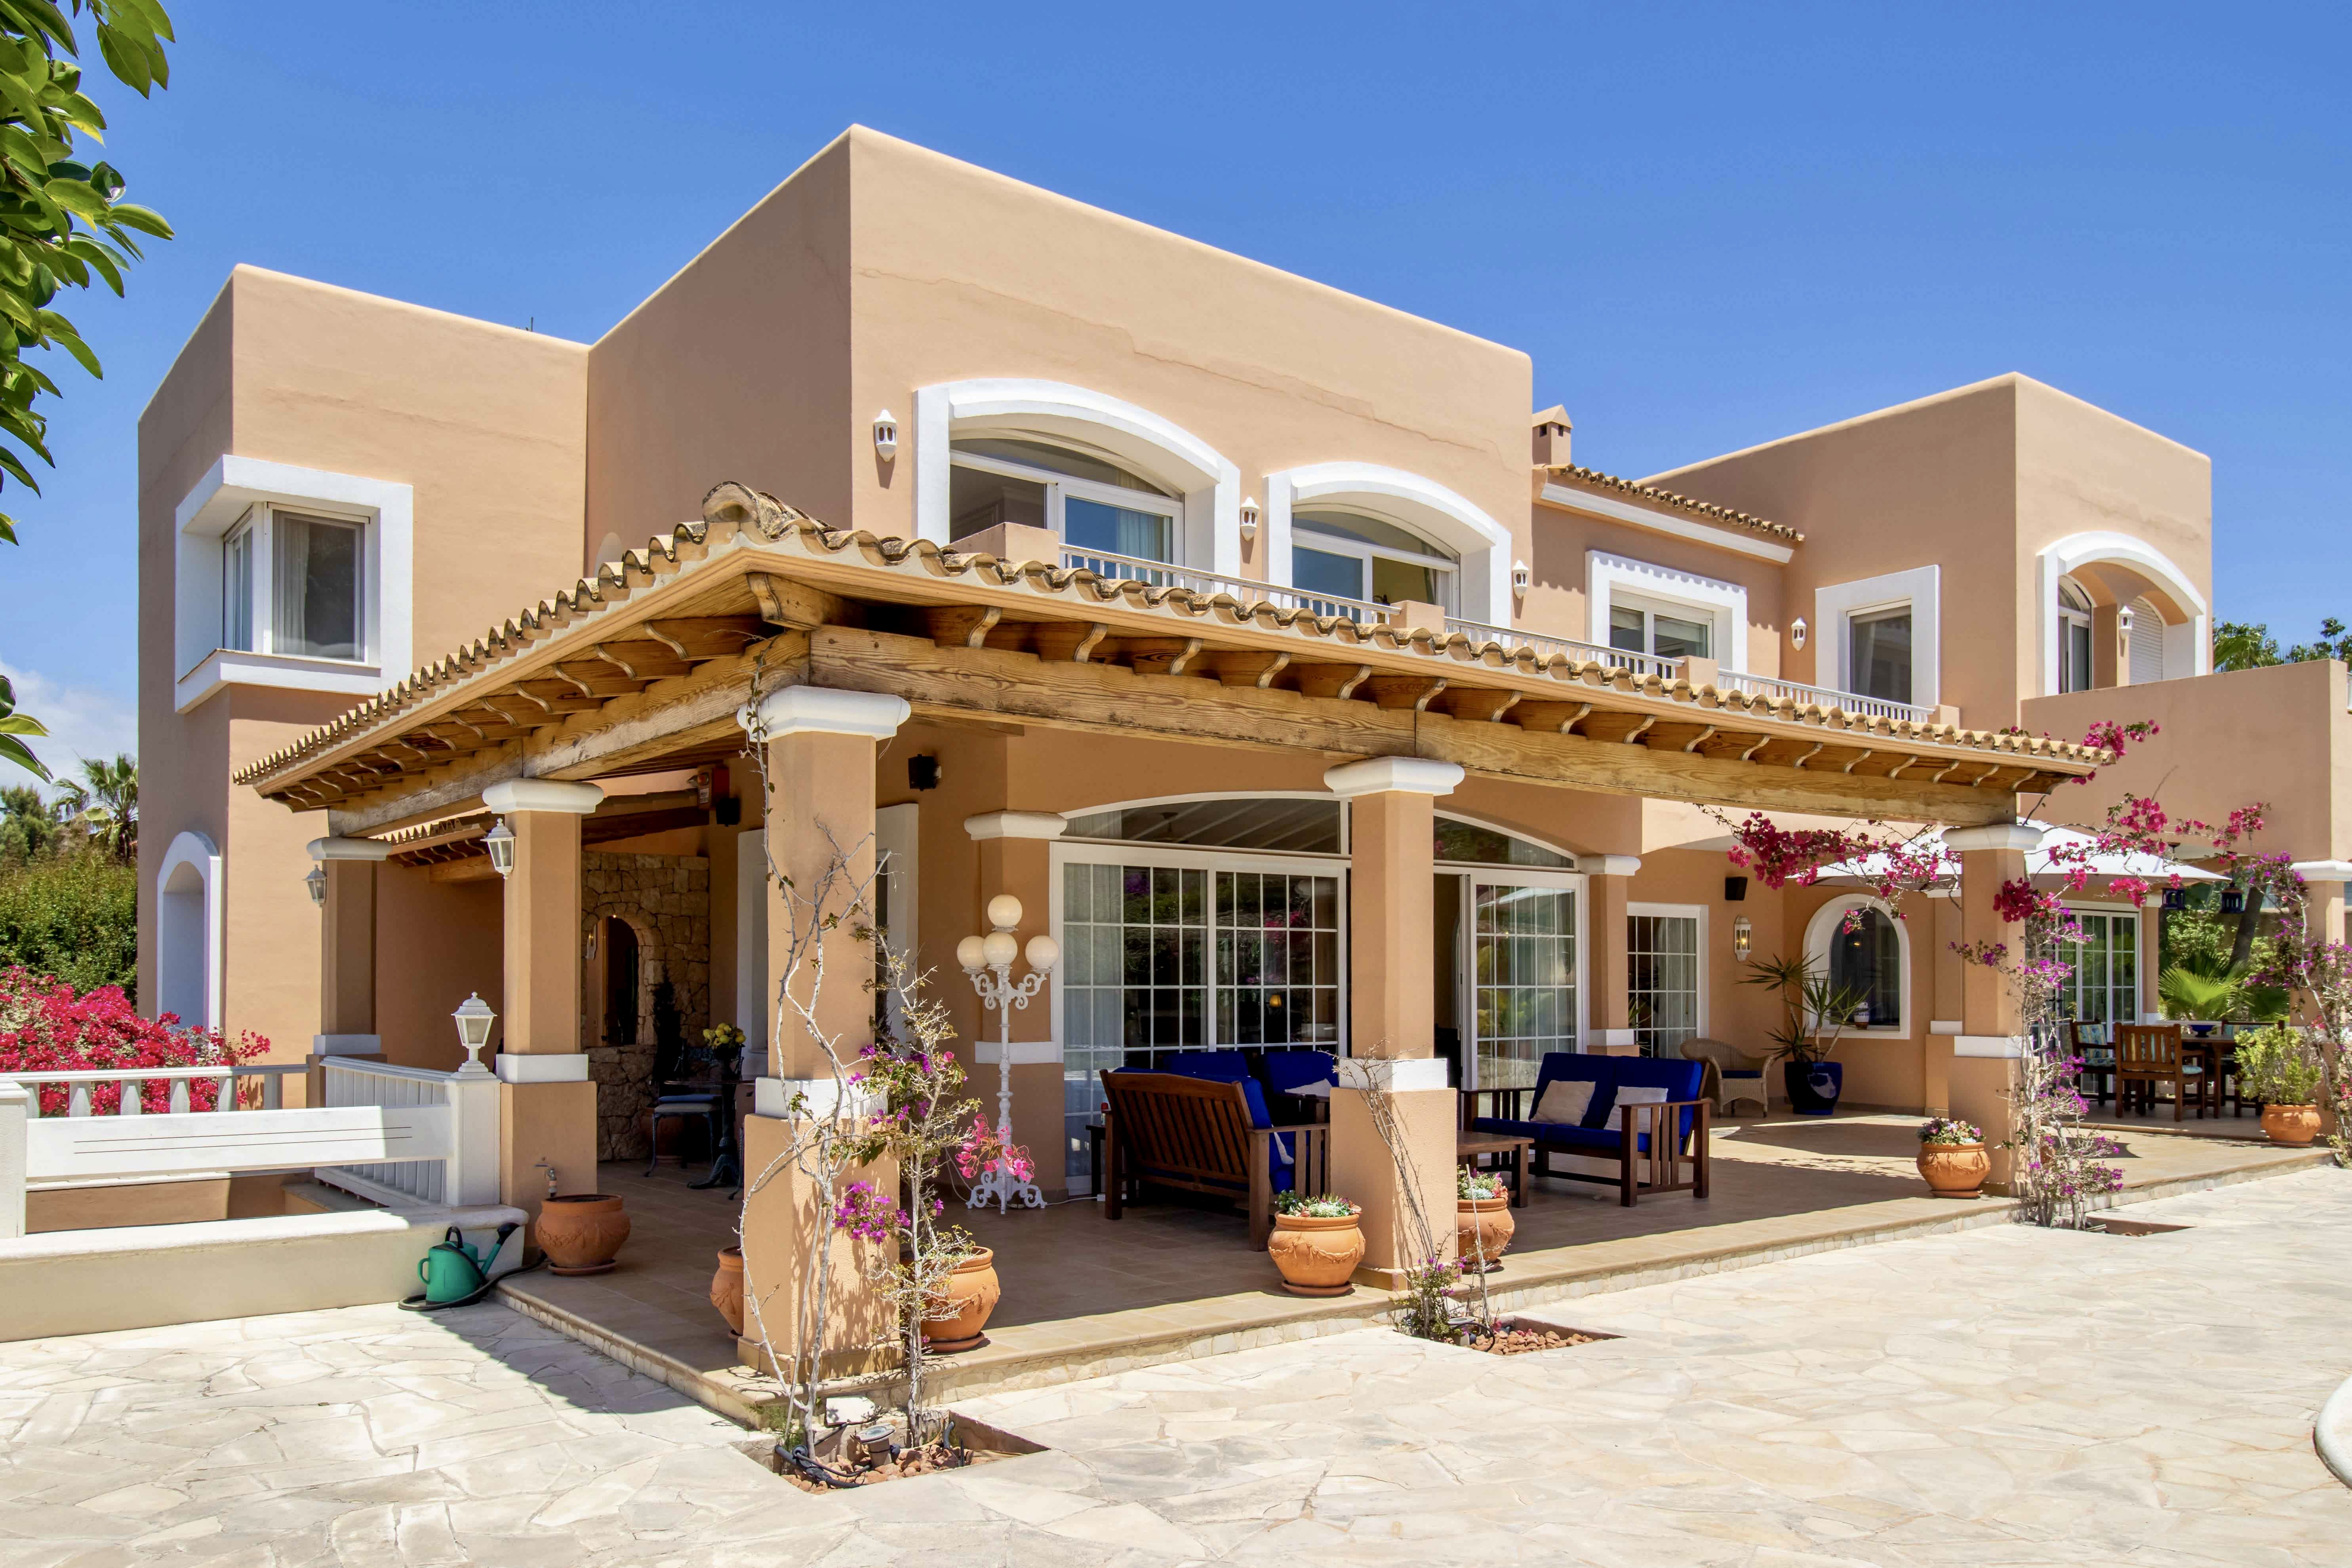 Generosa casa familiar de estilo mediterráneo cerca de Ibiza centro - 5